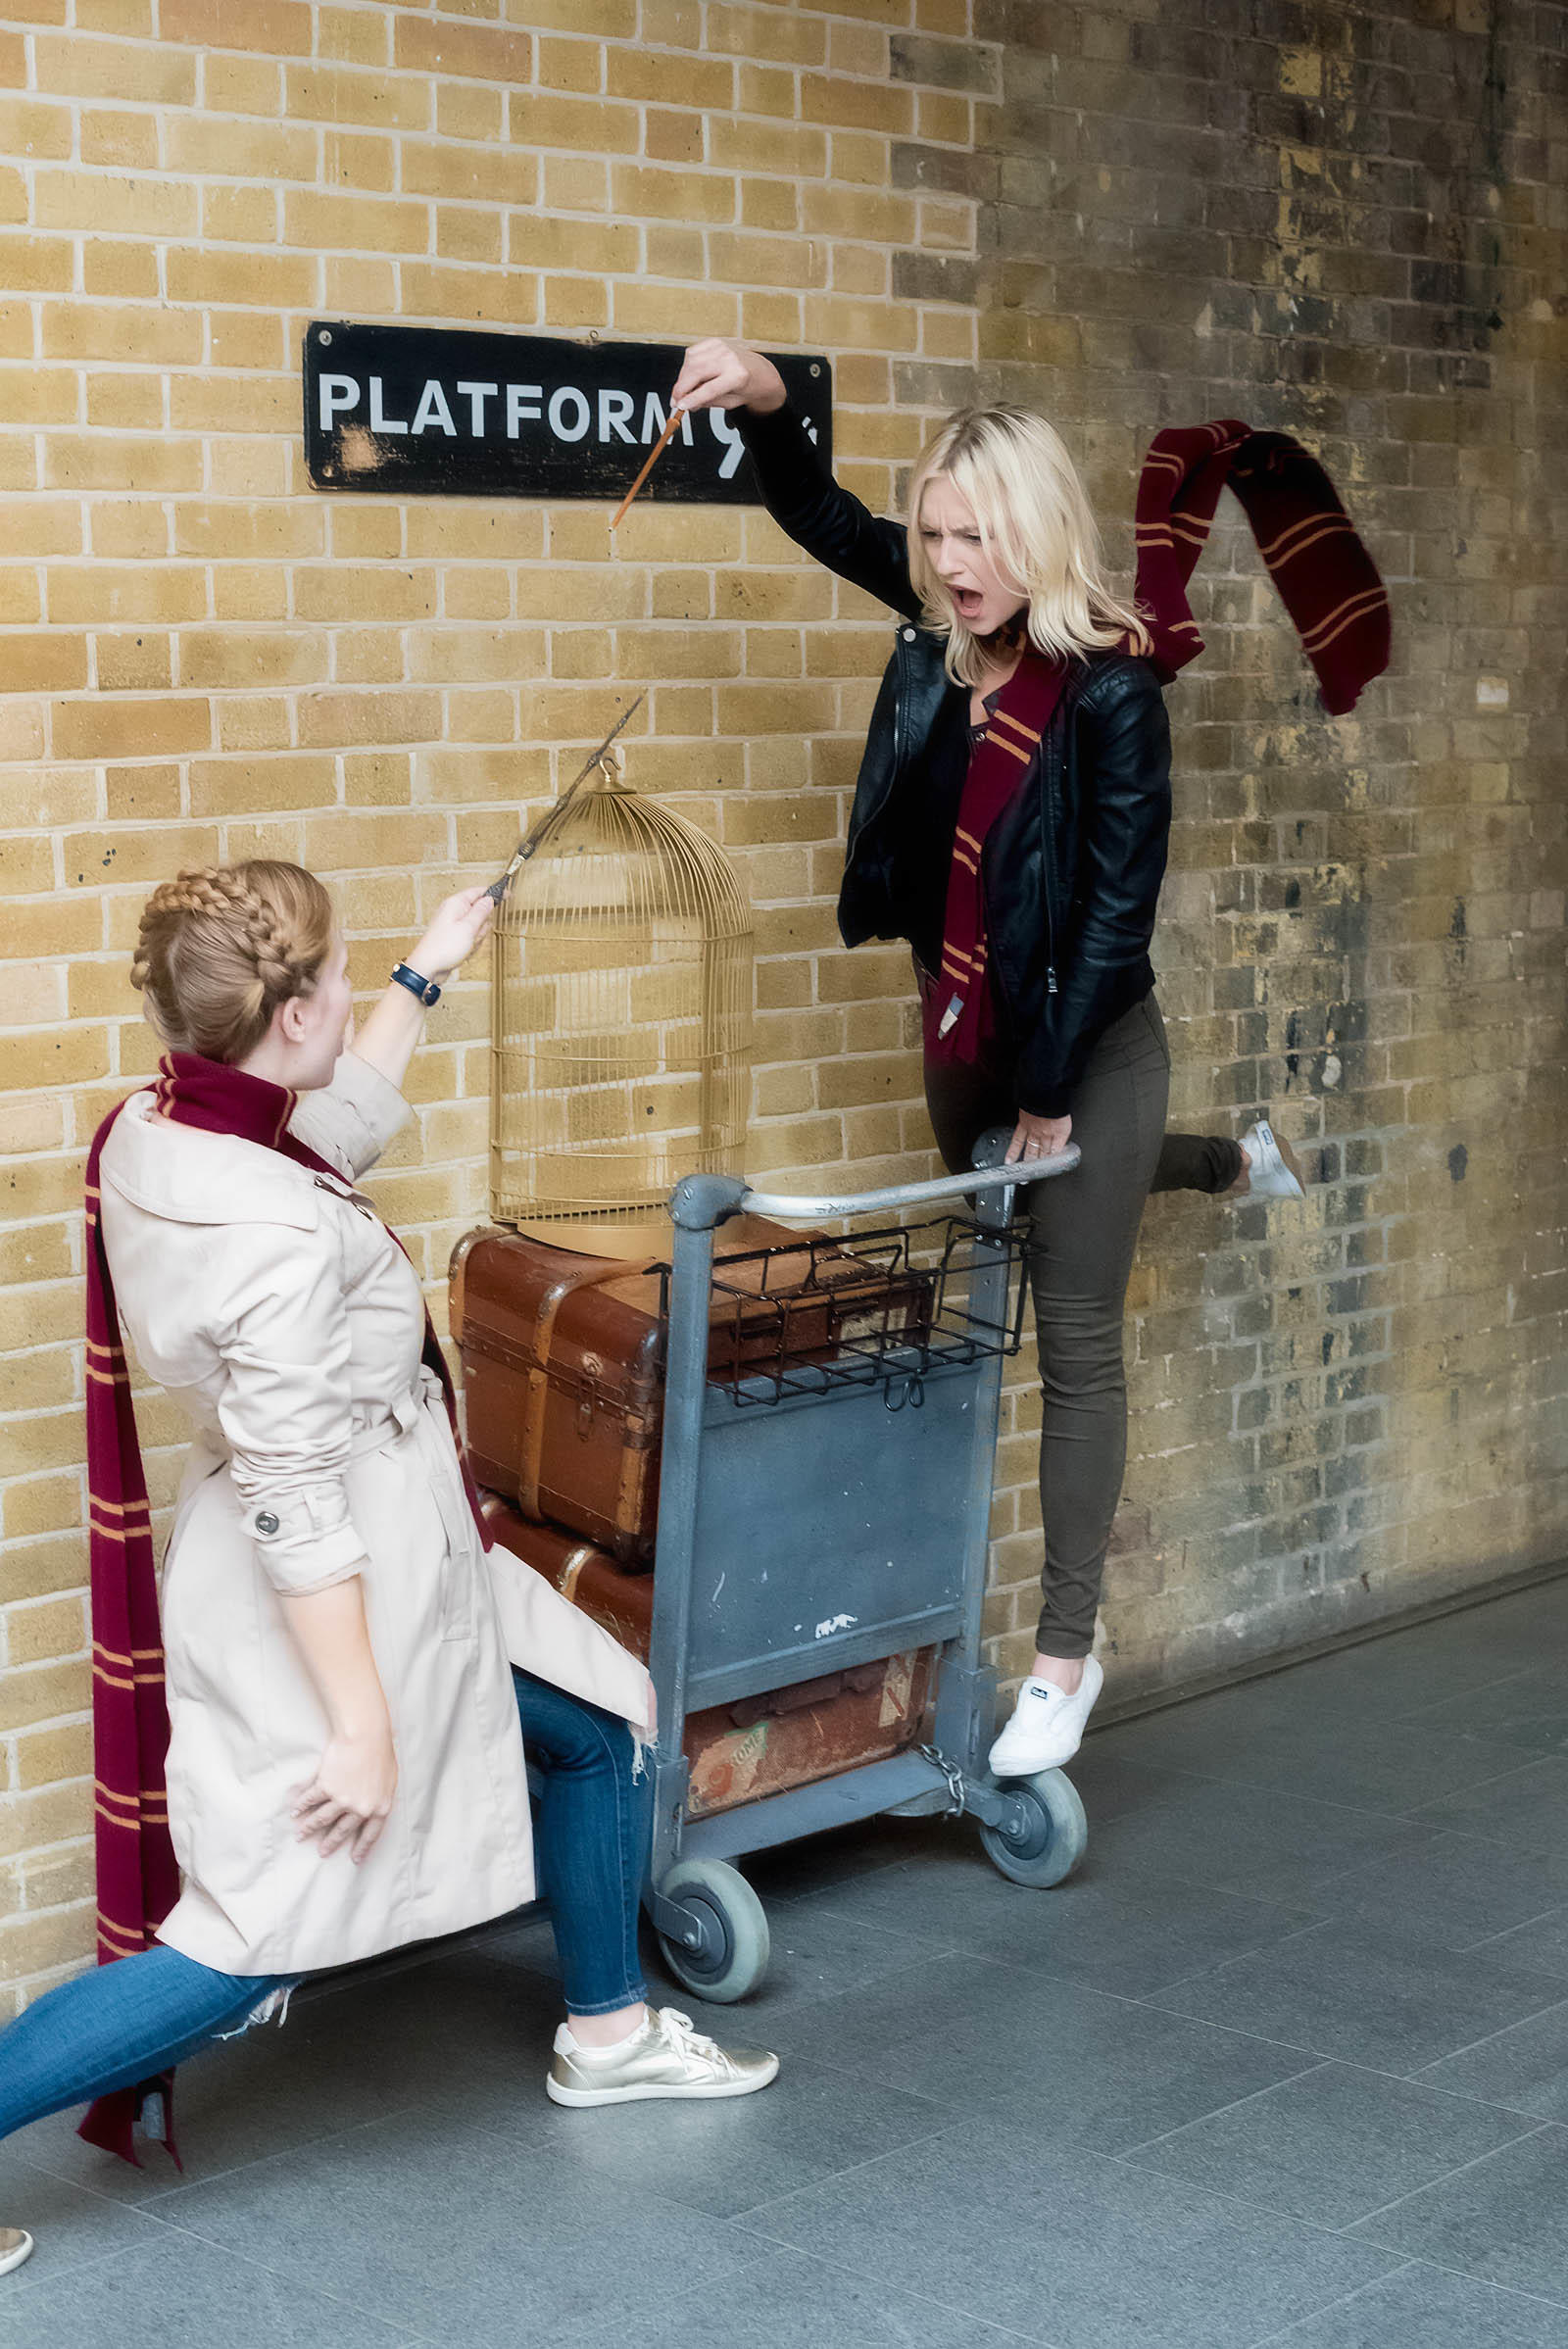 Platform 9 3/4 London King's Cross Station Harry Potter London